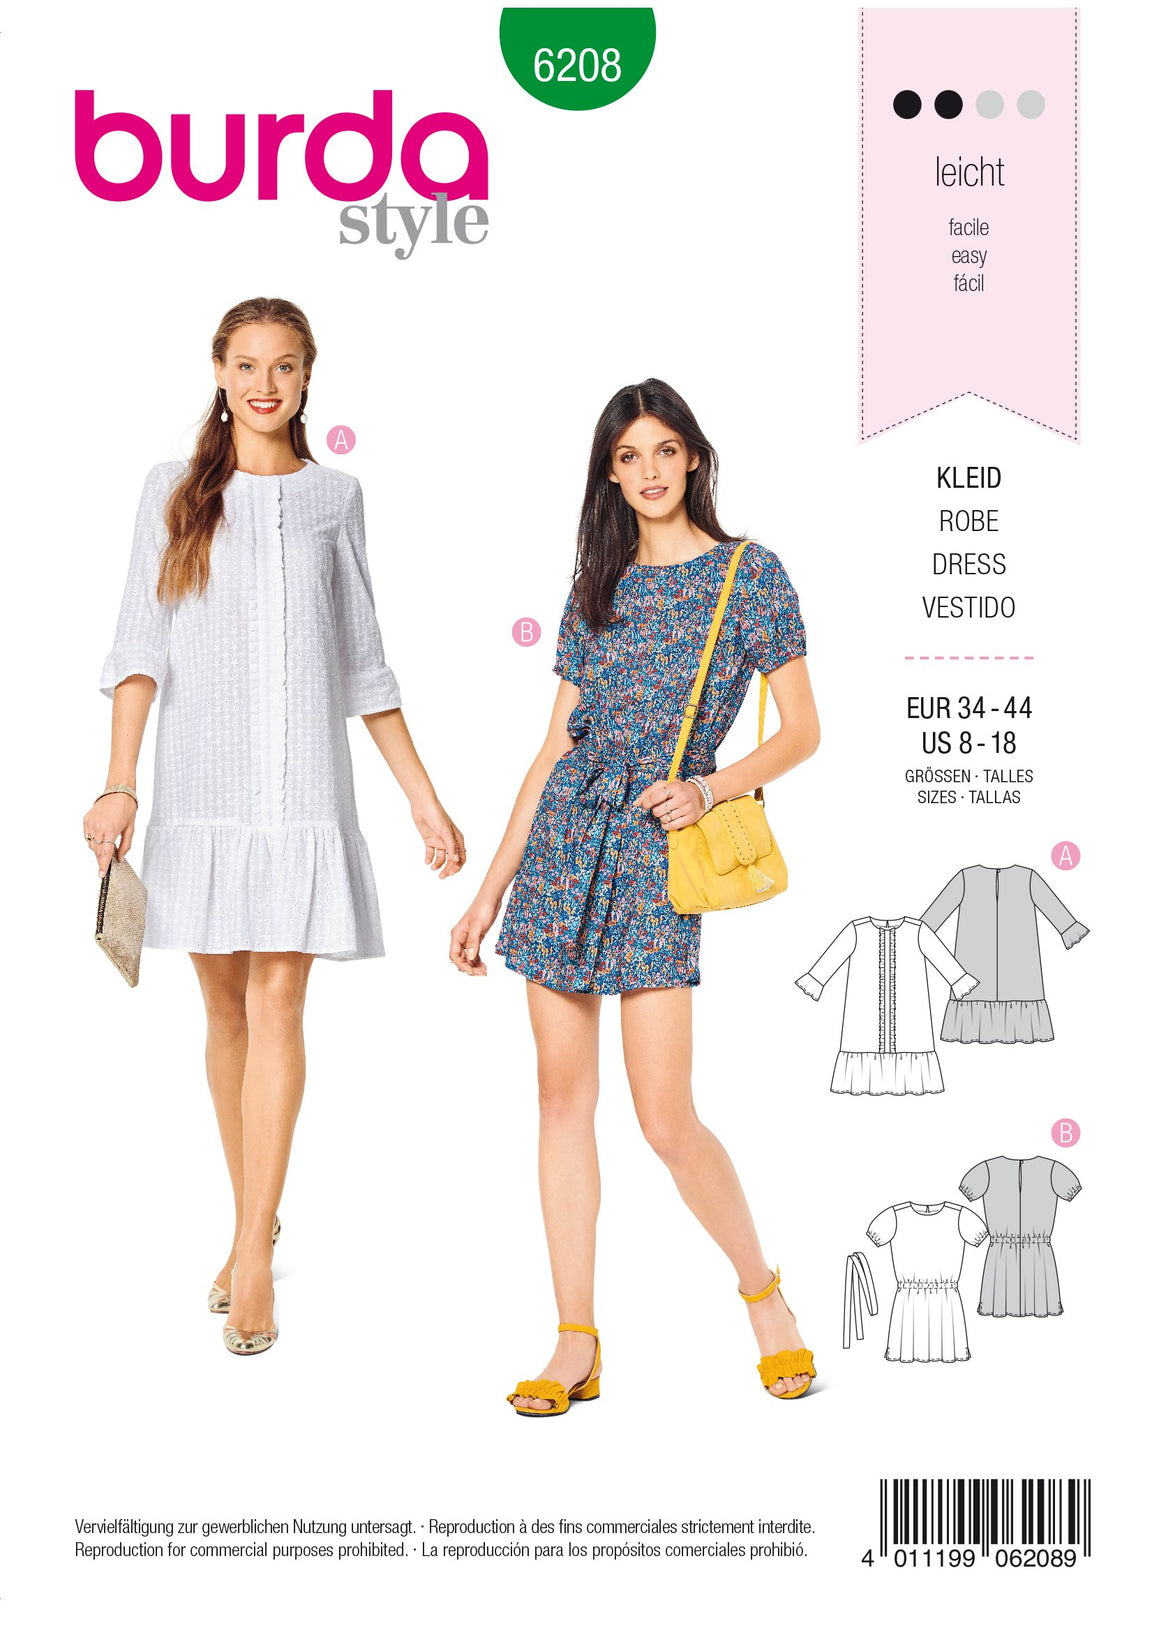 Dress Patterns | Jaycotts — Page 15 — jaycotts.co.uk - Sewing Supplies